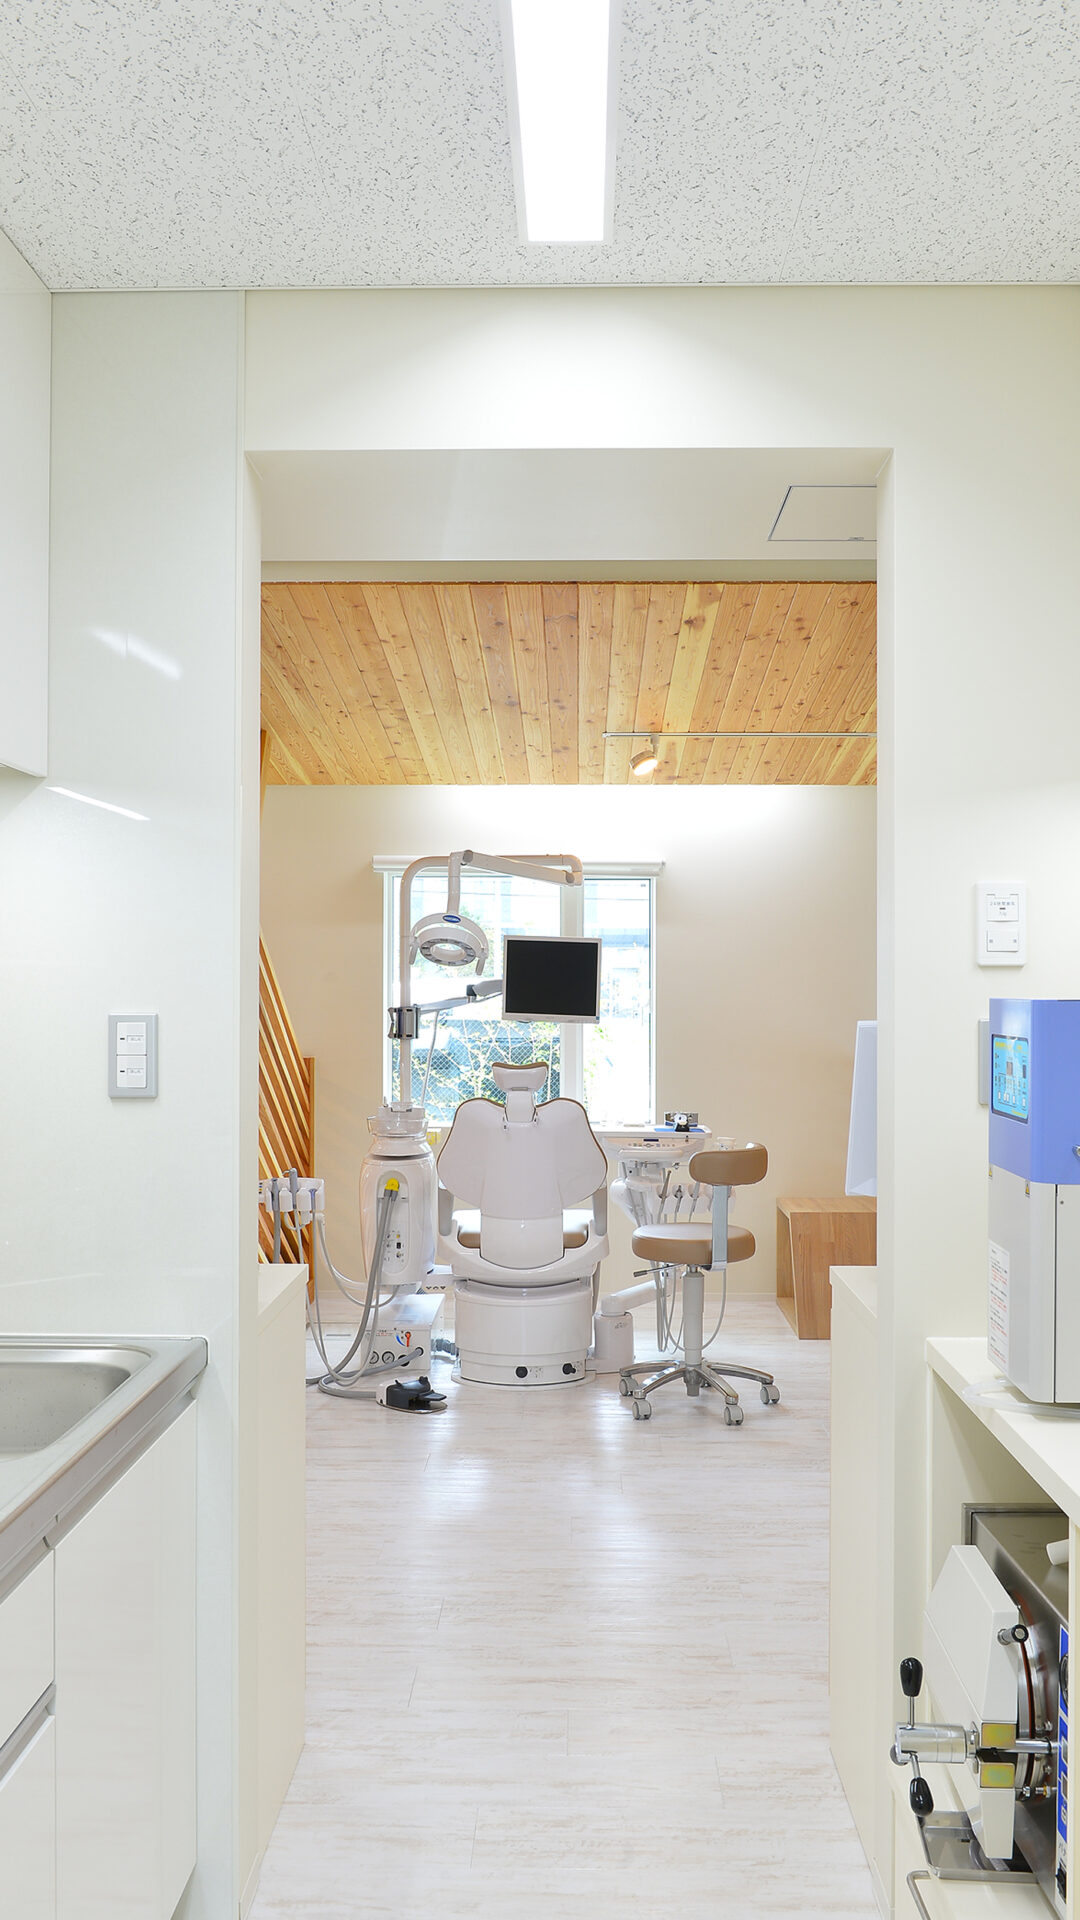 技工スペースは診察室の中央に位置し、コンパクトな診療動線計画とした